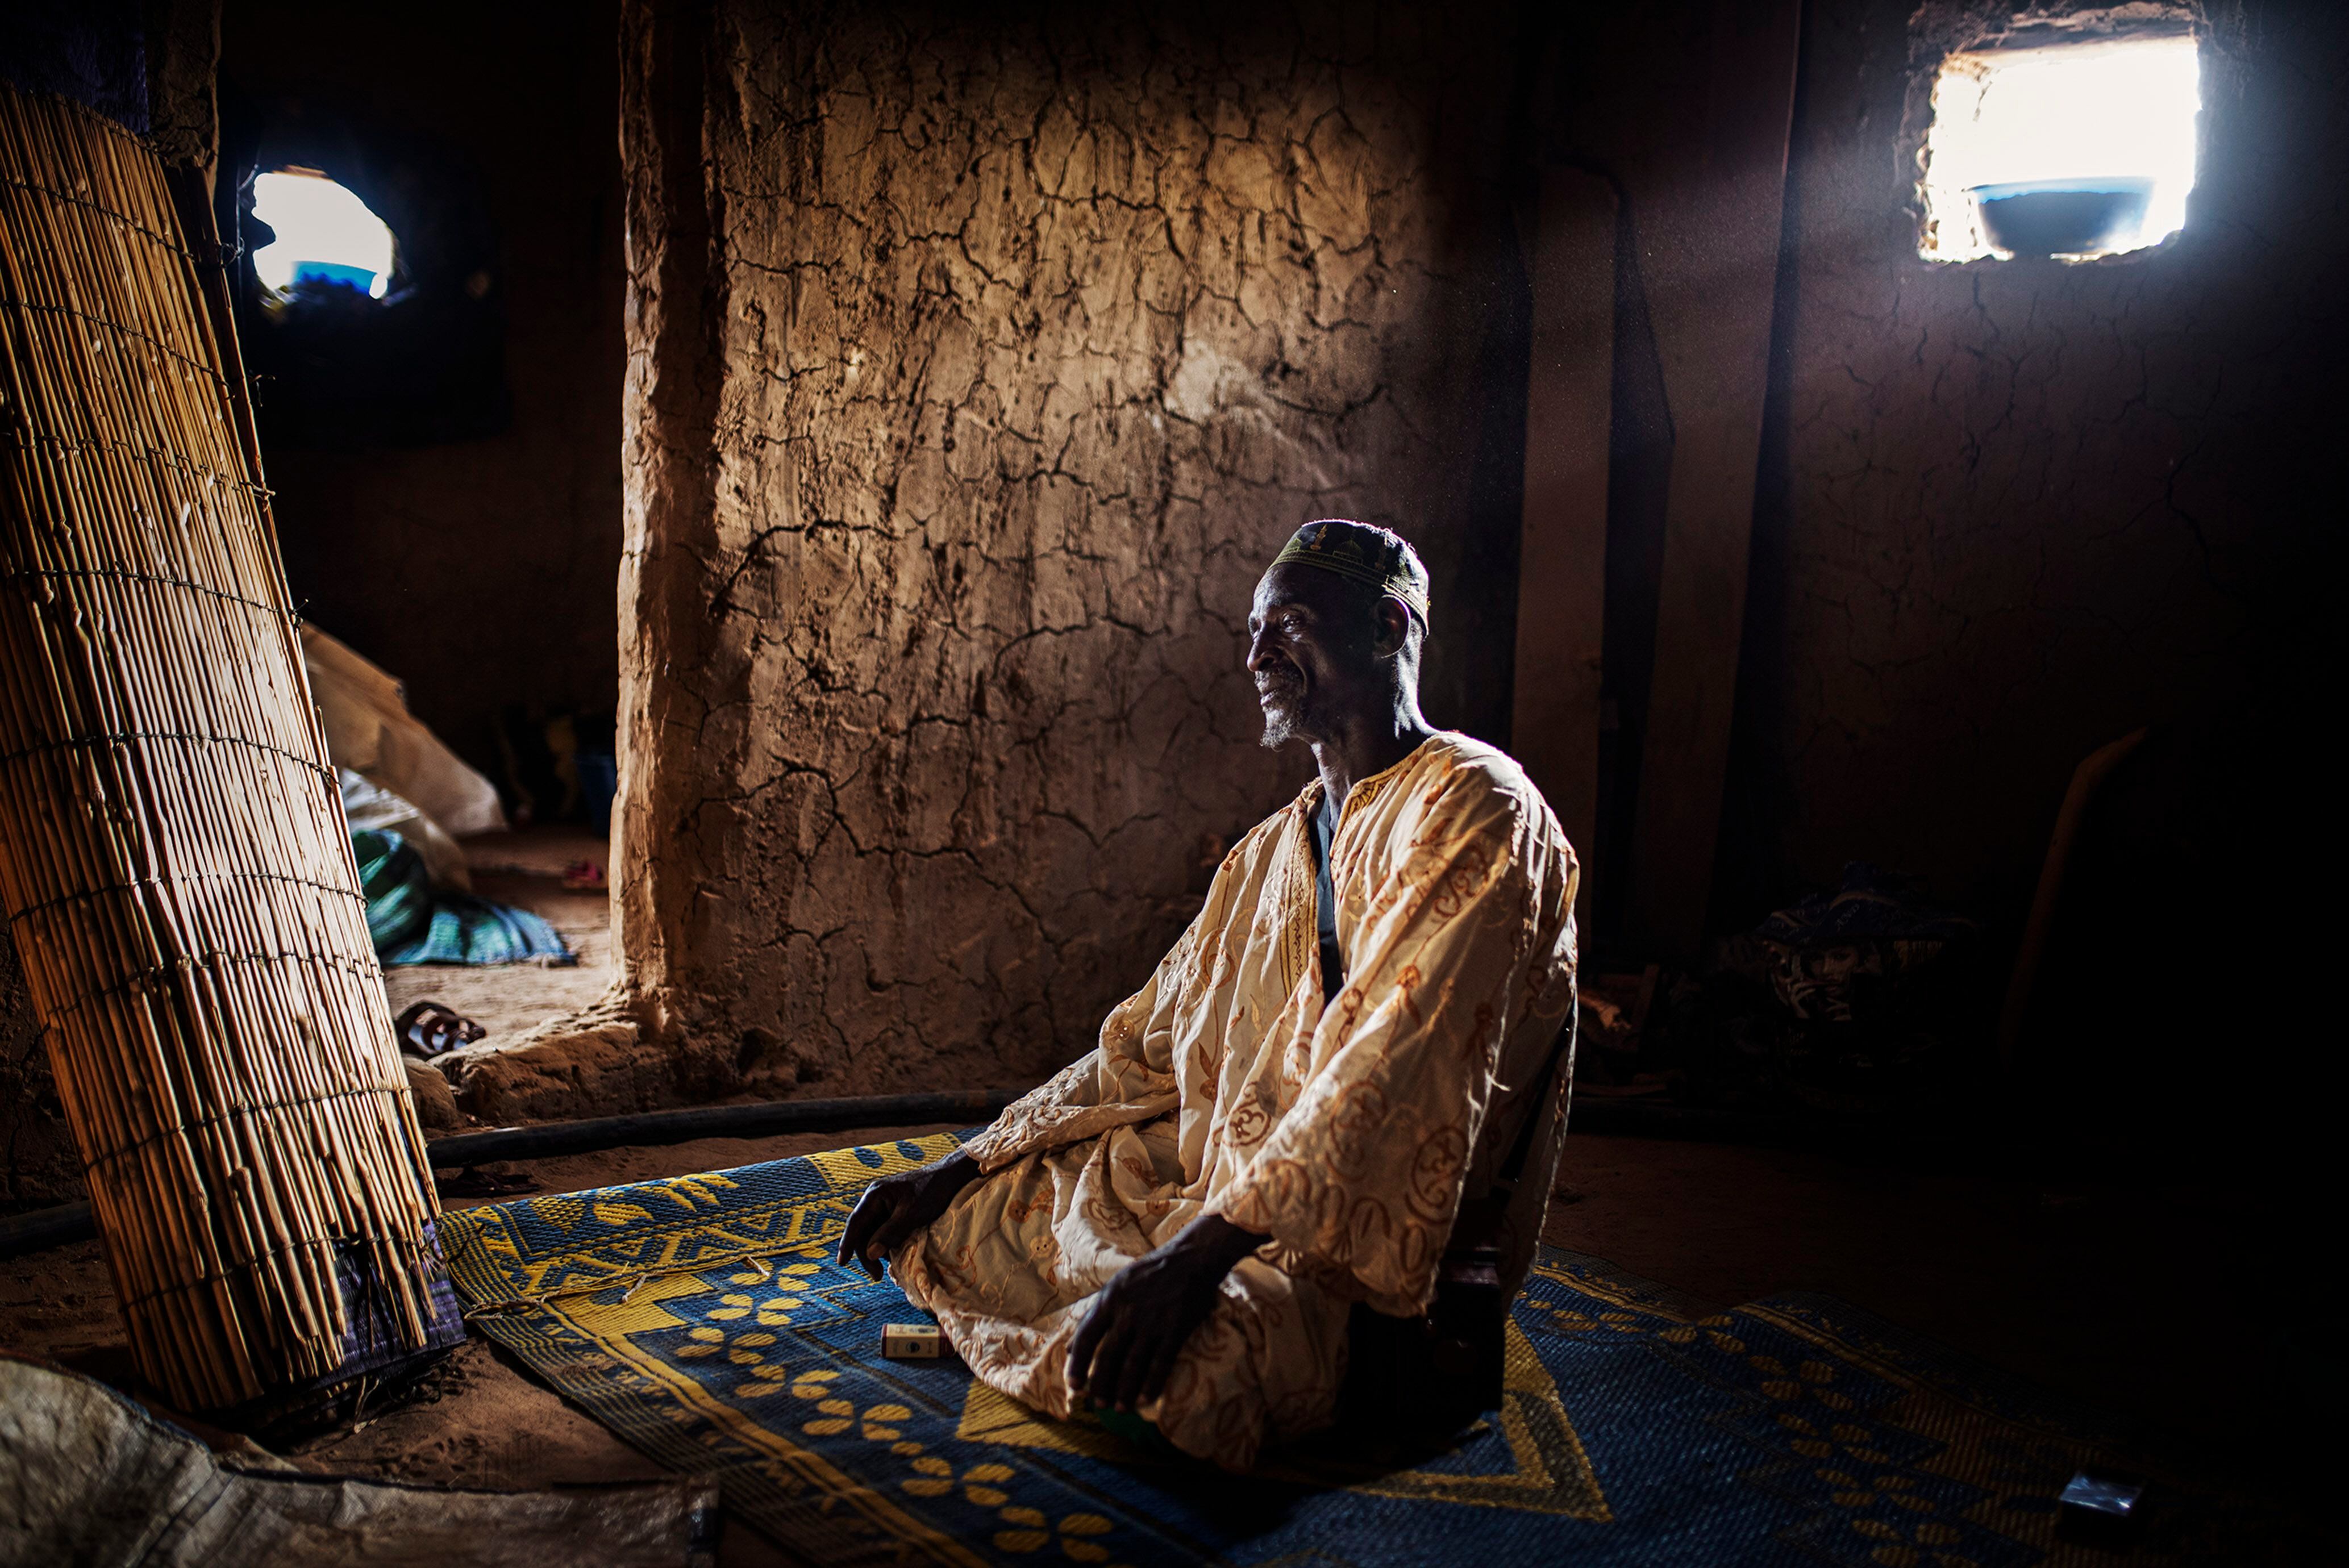 El comerciante de ganado Mahmoud Dicko reza en su nueva casa en la localidad de Dori, en el norte de Burkina Faso, después de abandonar su pueblo, Arbinda, a consecuencia de la violencia. Dicko se trasladó 80 kilómetros a pie durante tres días junto a una veintena de miembros de su familia. Hoy conviven todos en este pequeño espacio.